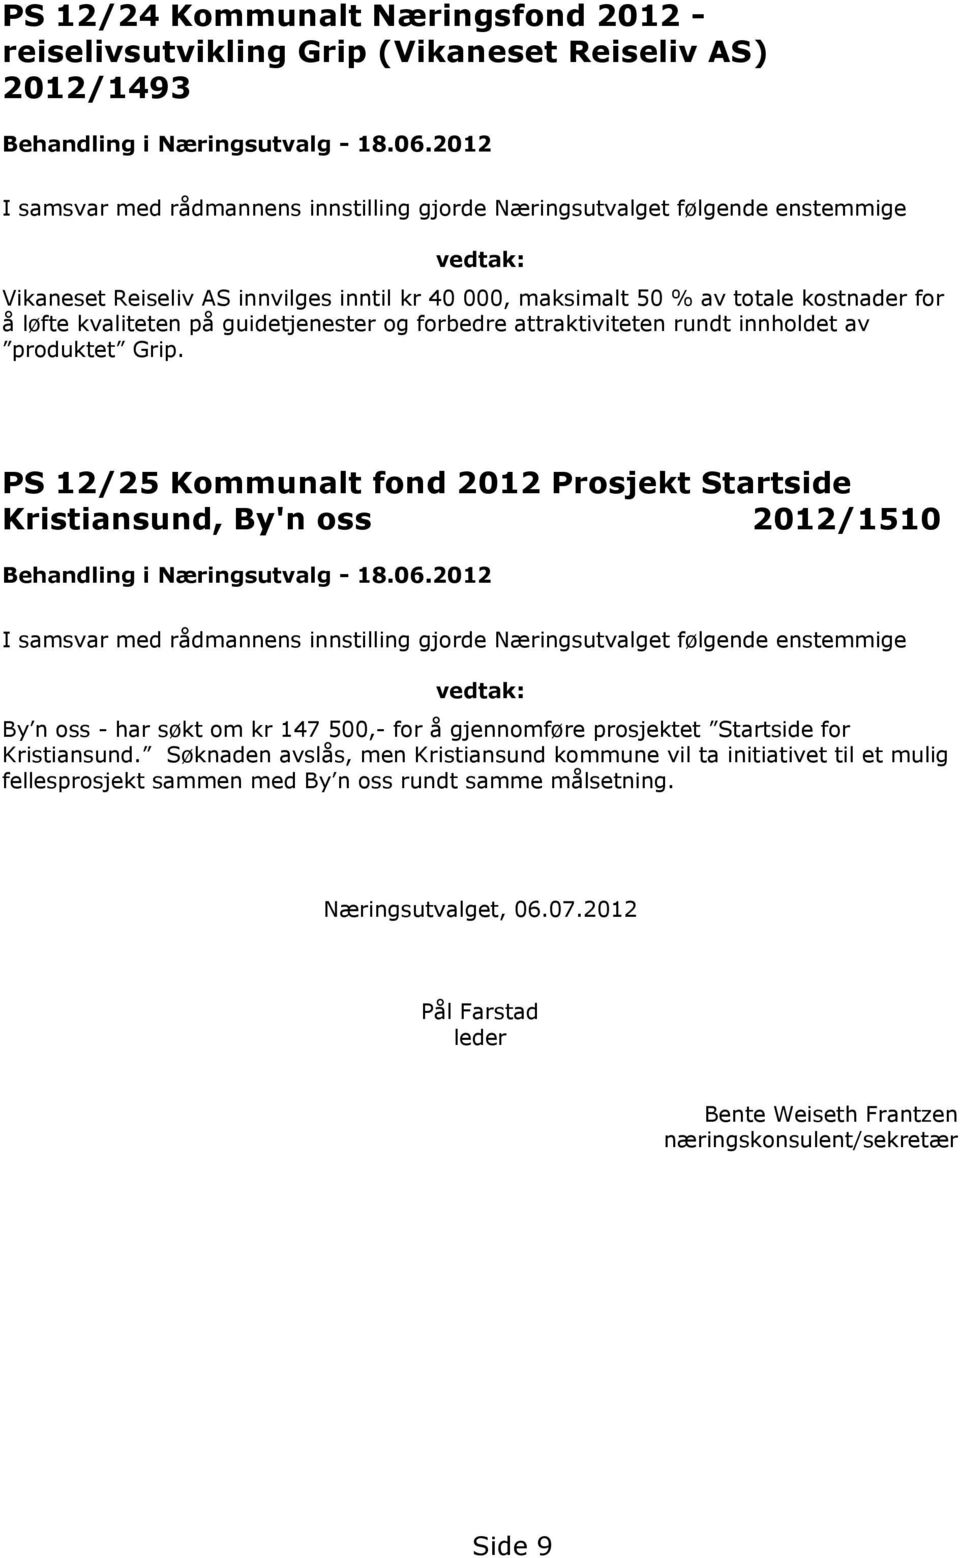 PS 12/25 Kommunalt fond 2012 Prosjekt Startside Kristiansund, By'n oss 2012/1510 By n oss - har søkt om kr 147 500,- for å gjennomføre prosjektet Startside for Kristiansund.